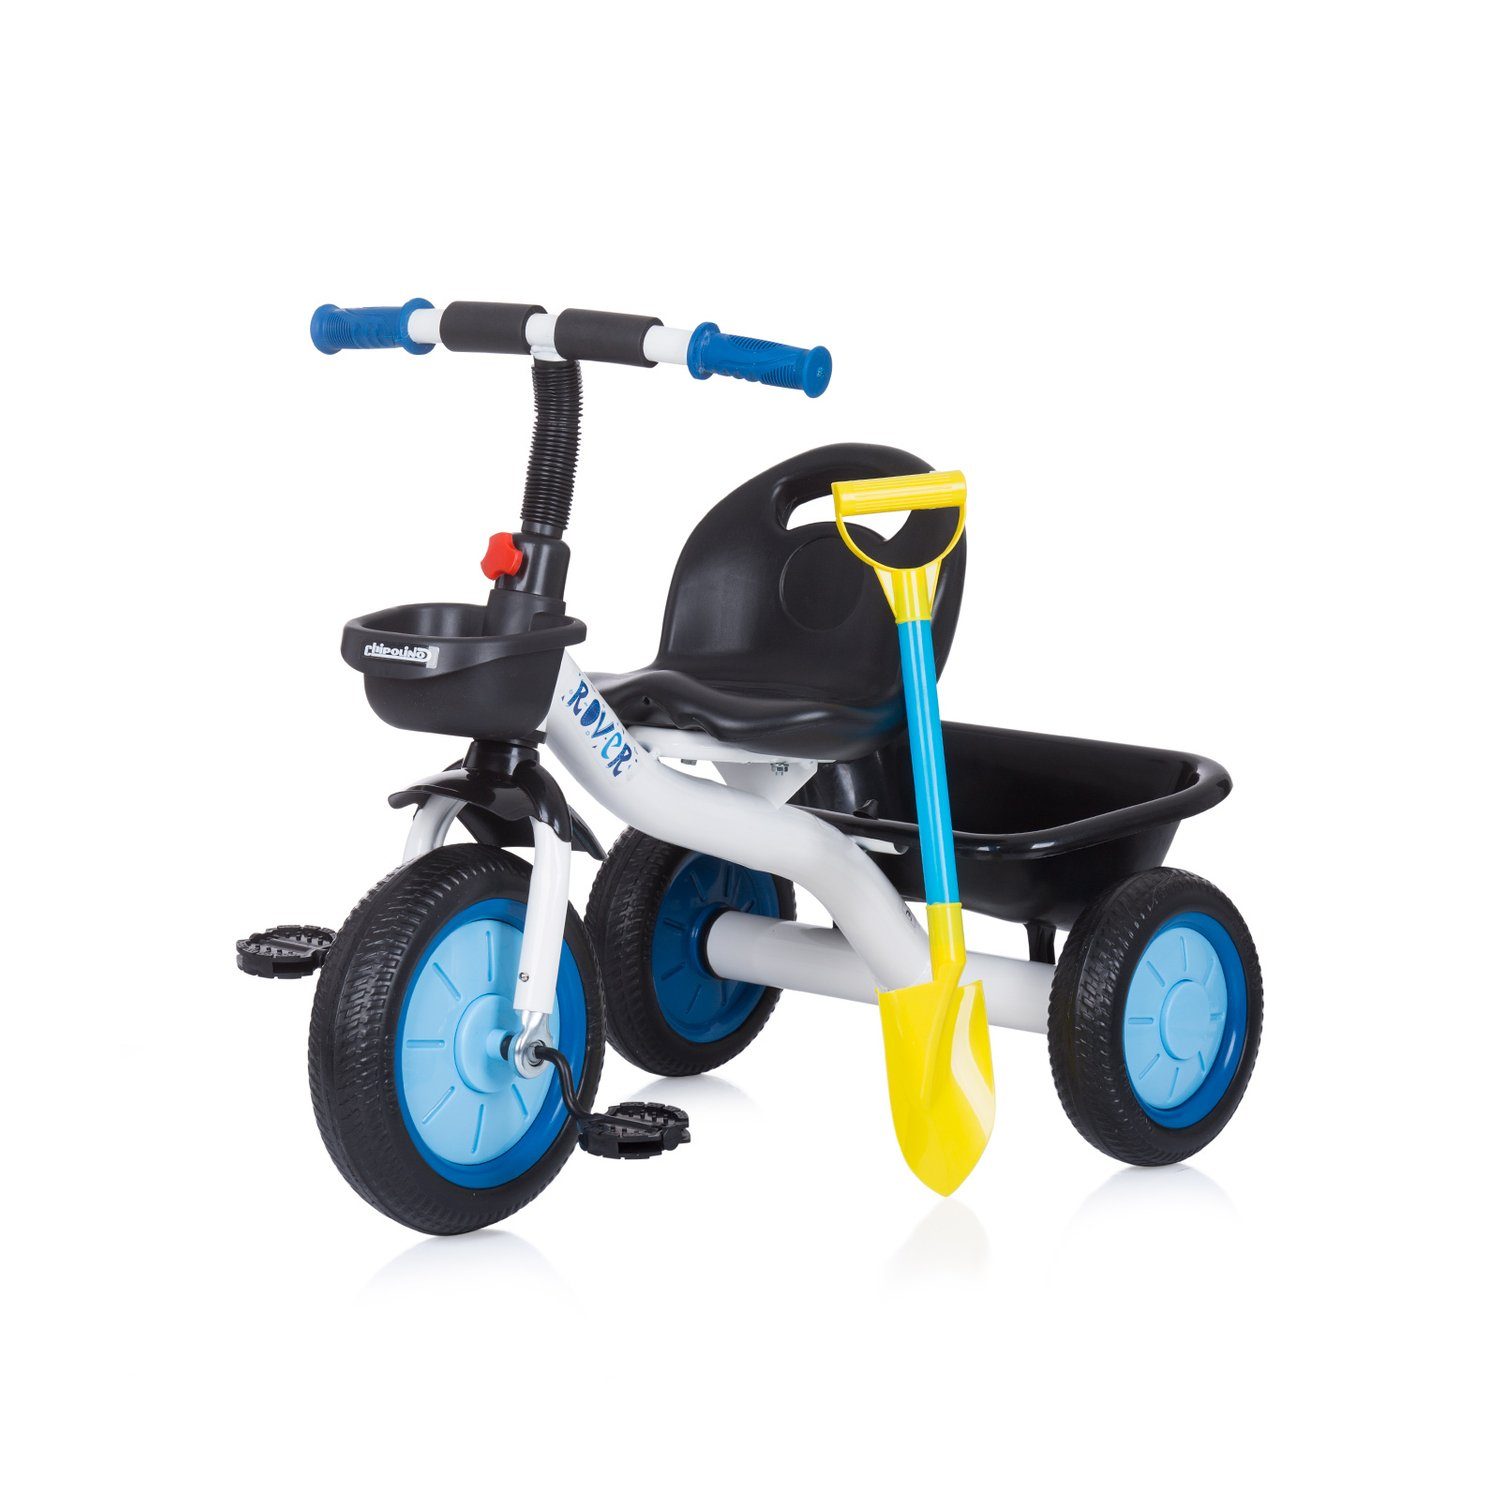 Spielzeug Dreiräder Chipolino Dreirad Dreirad Rover Pedale, Körbe, maximale Traglast 25 kg, inkl. Schaufel